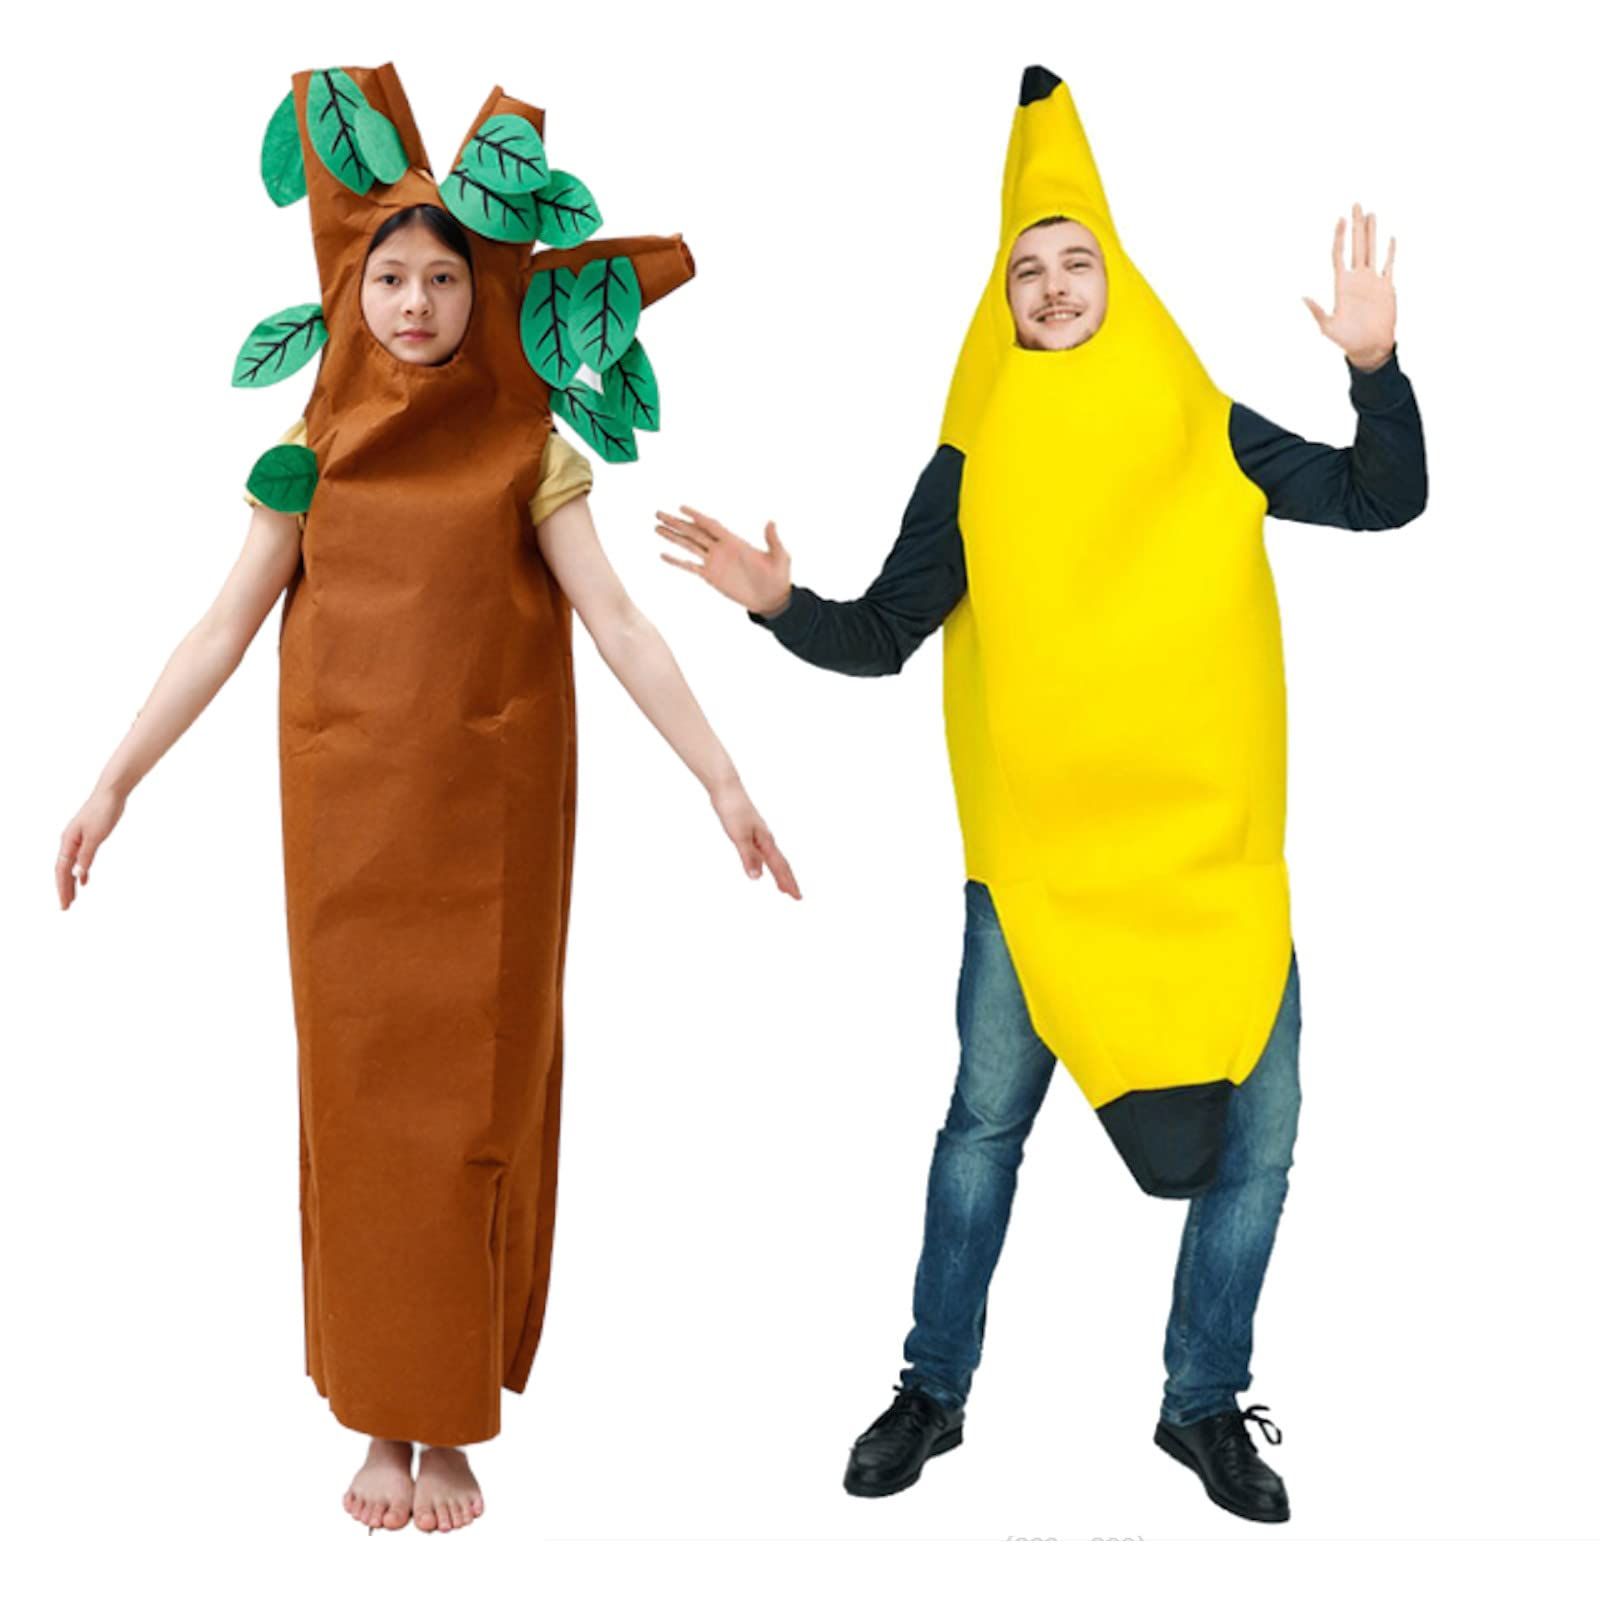 バナナ 着ぐるみ コスプレ 大人用 おもしろコスチューム M-Lサイズ( 黄 